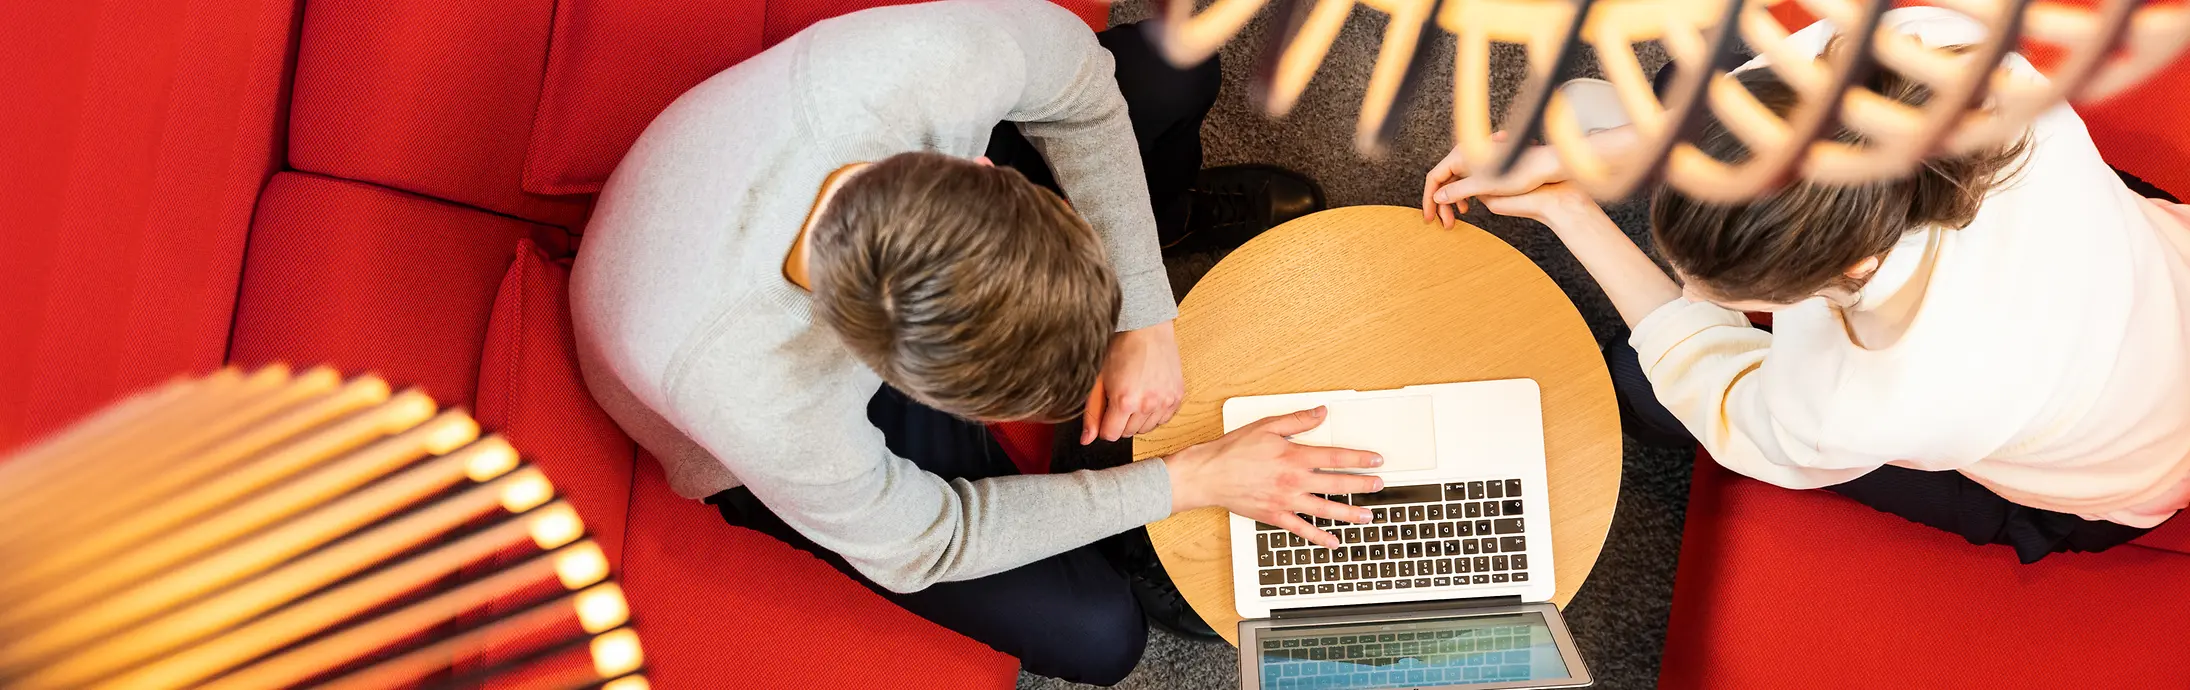 Två personer sitter på en röd soffa och arbetar tillsammans på en dator. 